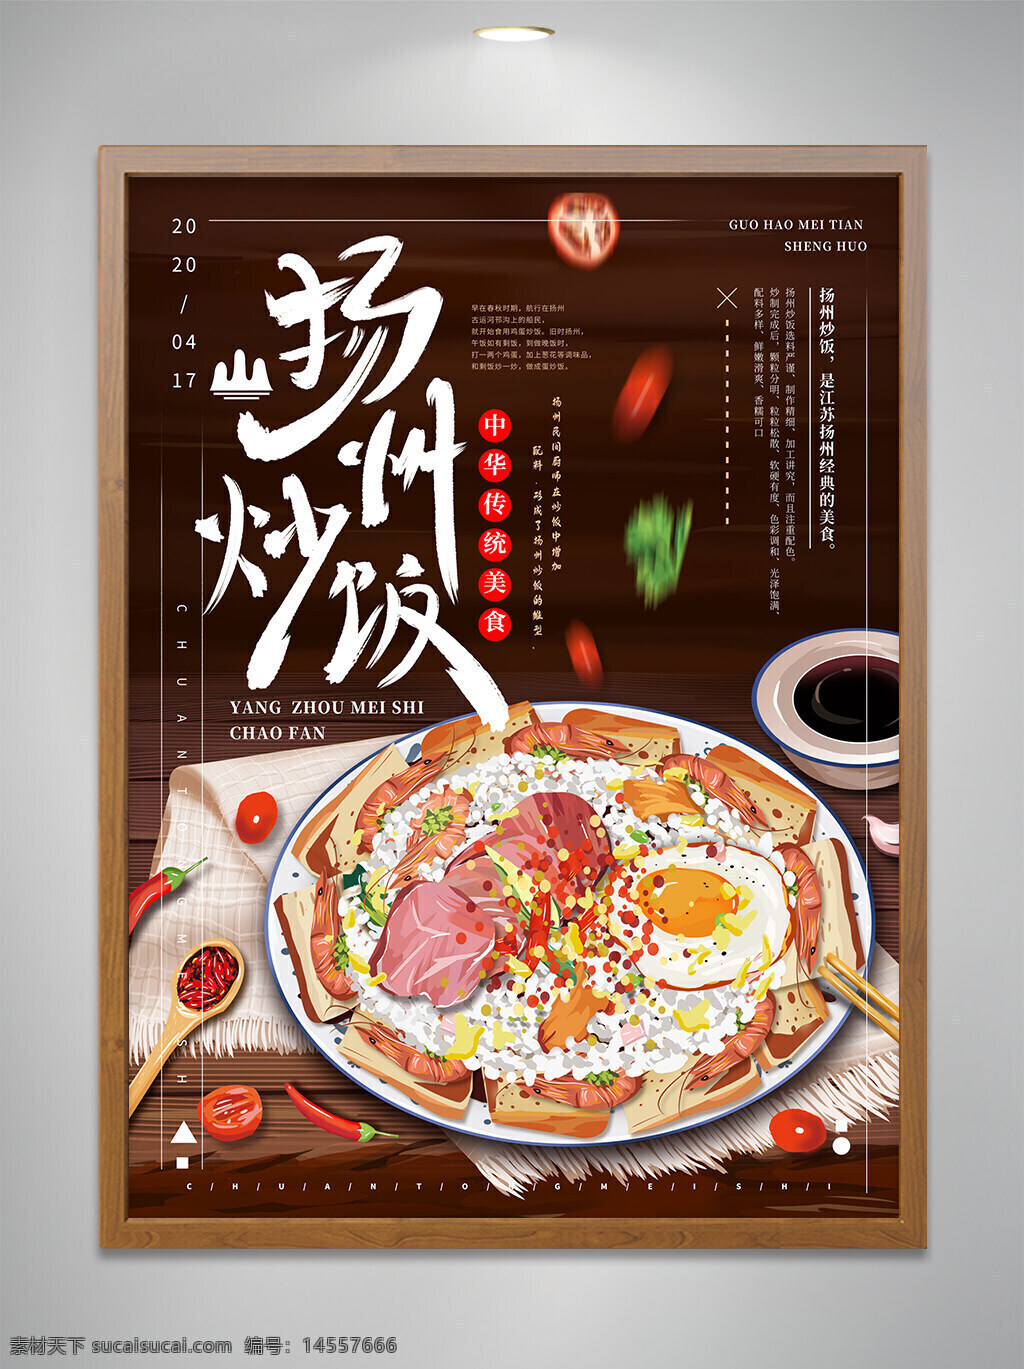 扬州炒饭 美食 海报 设计 宣传 扬州 宣传海报 宣传单页 炒饭 蛋炒饭